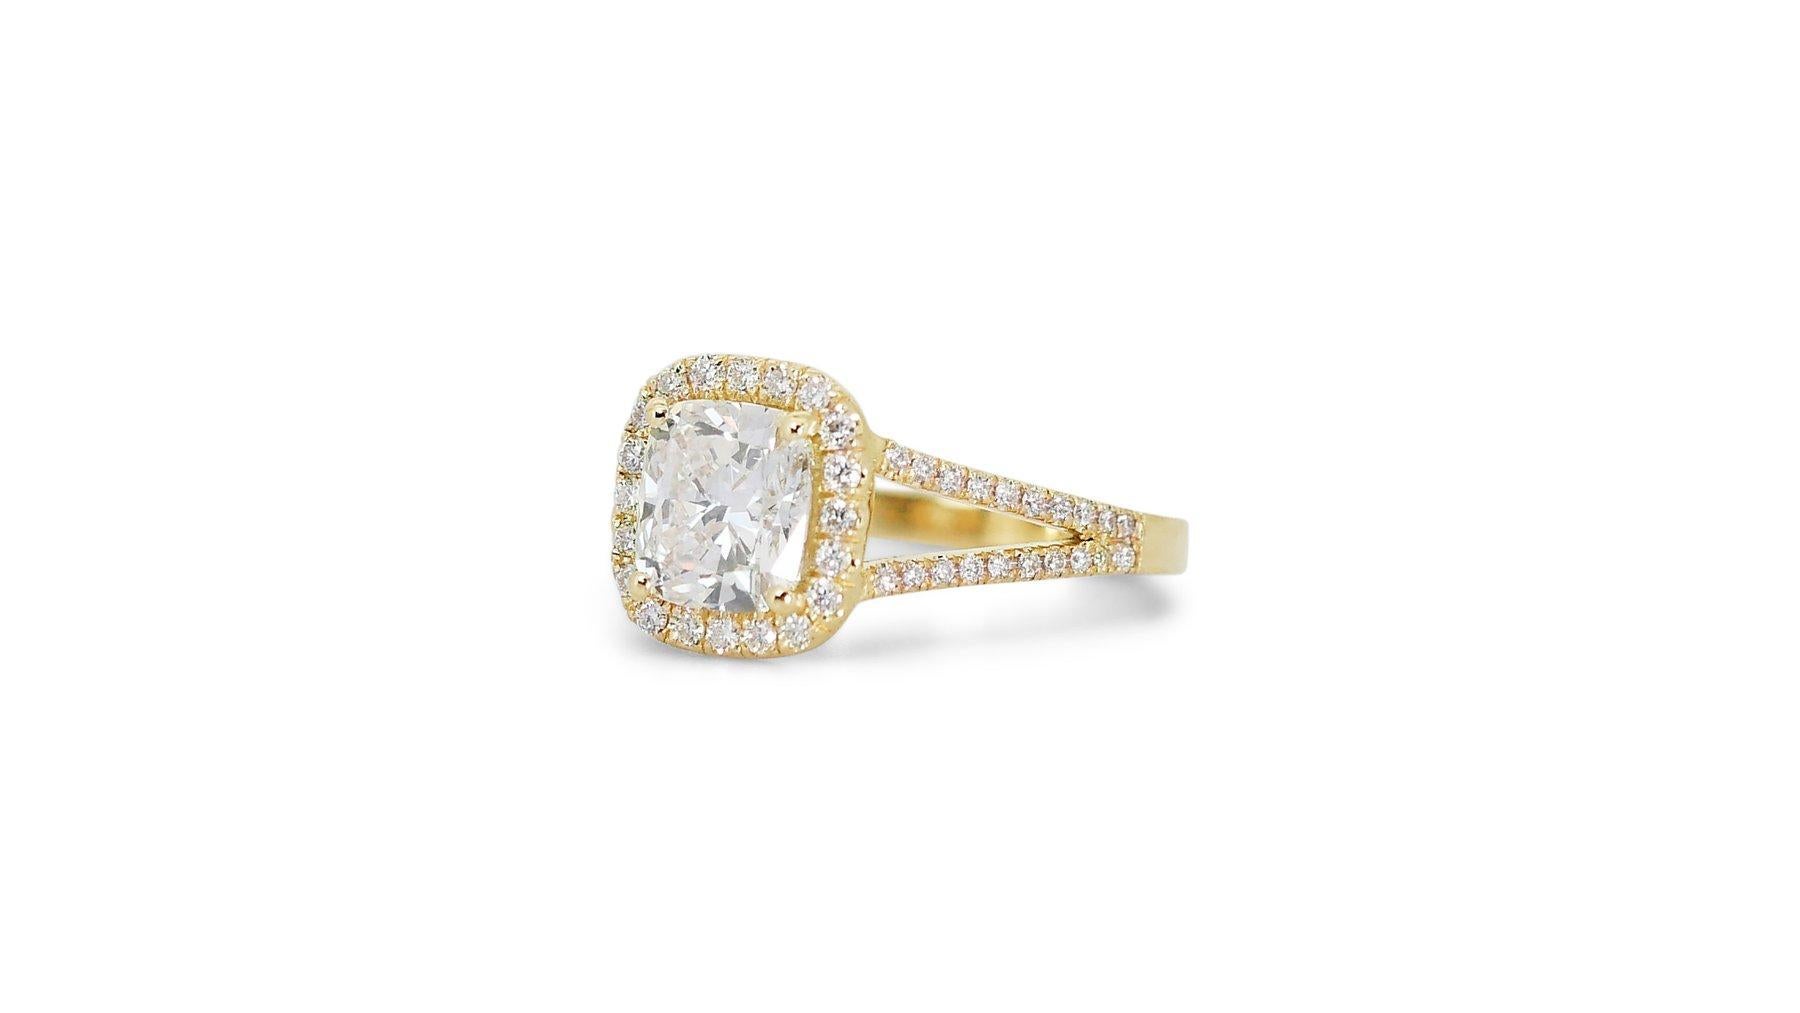 Bague luxueuse en or jaune 18 carats avec halo de diamants de 1,80 ct - certifiée GIA

Laissez-vous séduire par la sophistication de cette luxueuse bague en or jaune 18 carats, centrée sur un diamant taille coussin de 1,50 carat. Cette pièce